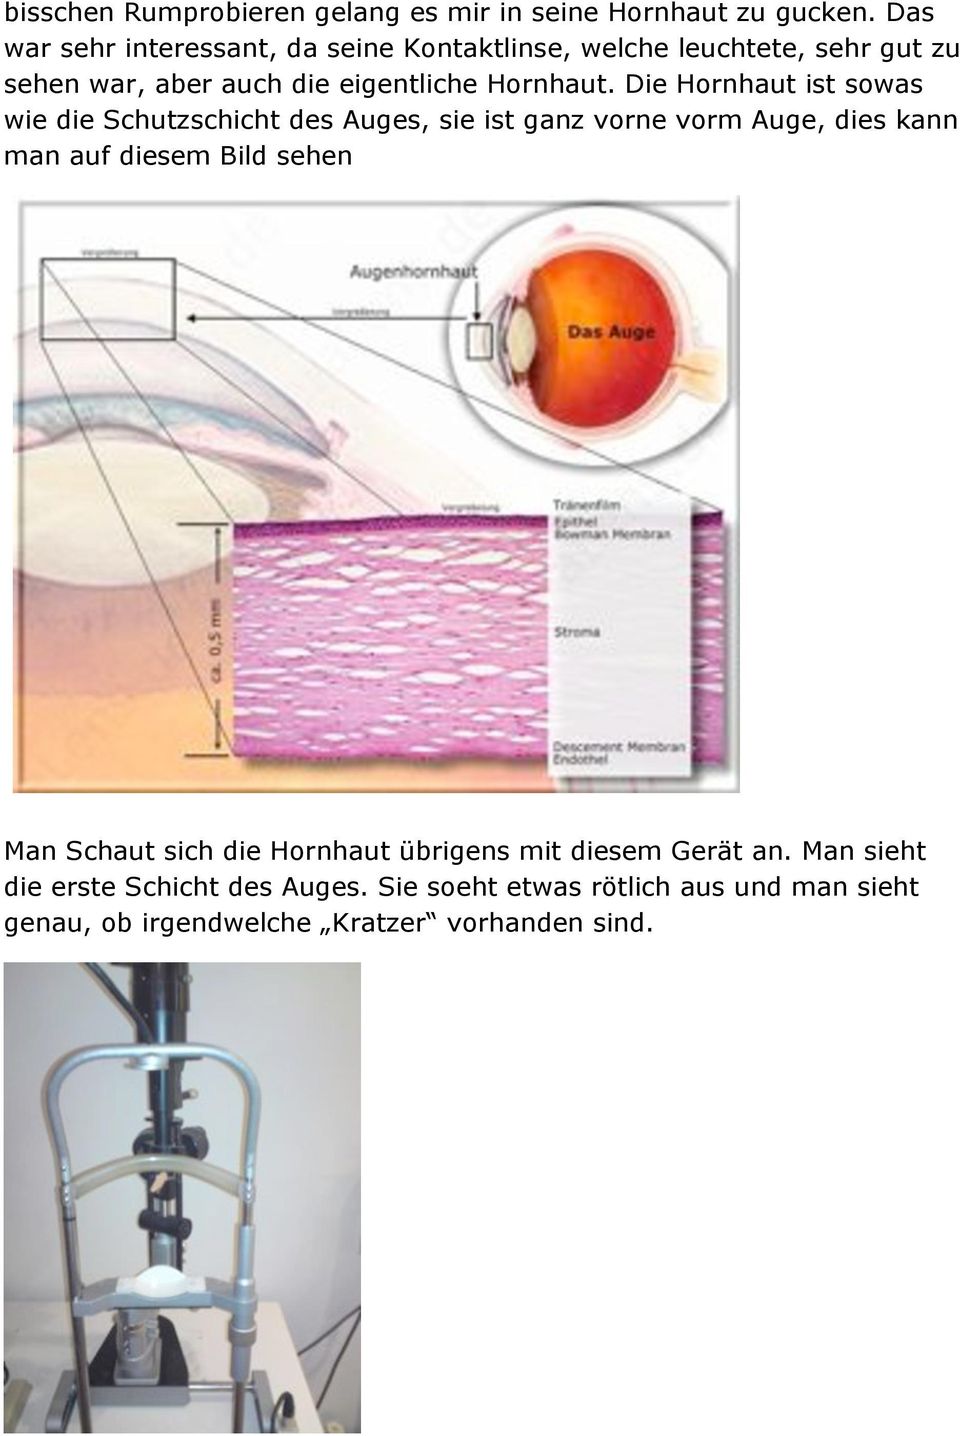 Die Hornhaut ist sowas wie die Schutzschicht des Auges, sie ist ganz vorne vorm Auge, dies kann man auf diesem Bild sehen